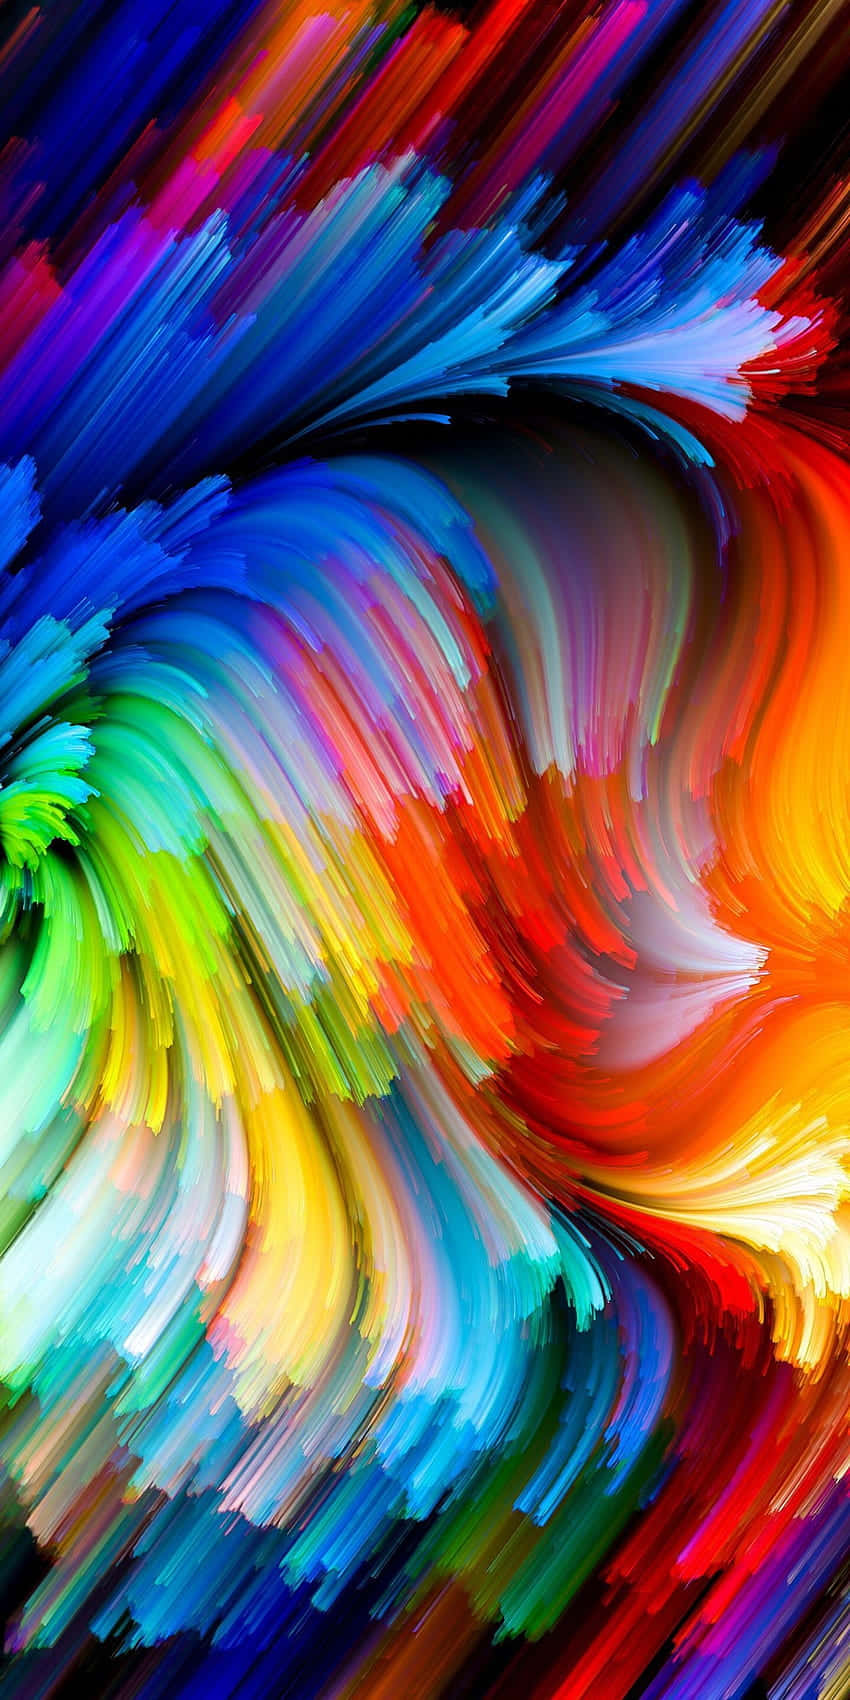 Nyd de levende farver fra Aesthetic Rainbow Mobile Wallpaper. Wallpaper